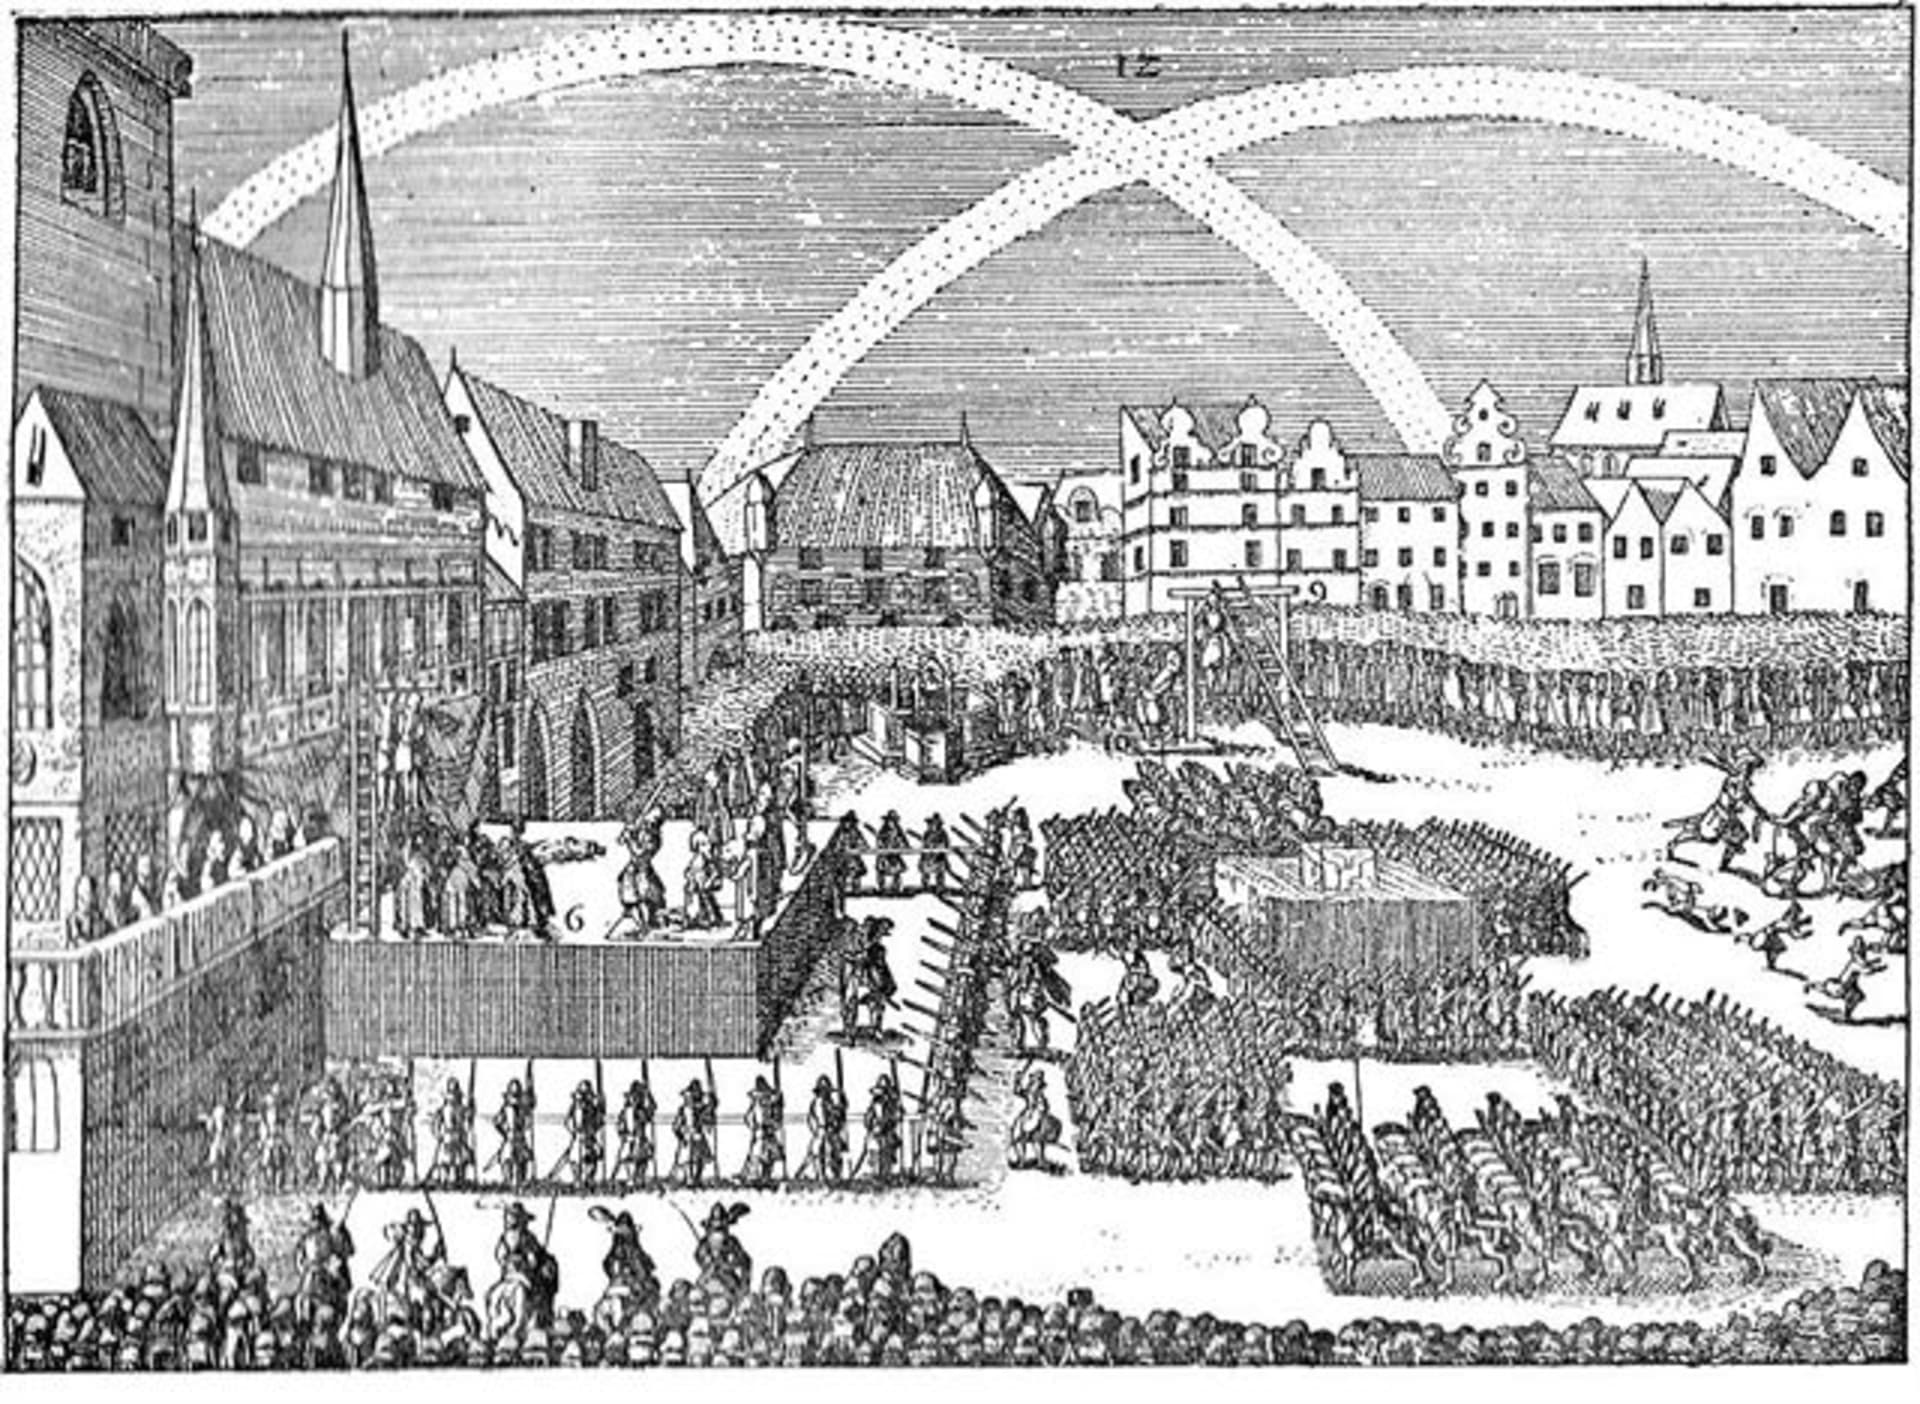 Staroměstská exekuce, poprava 27. rebelů 21. července 1621. Někteří byli sťati , jiní oběšeni (autor: Eduard Herold (1820 - 1895), dle starodávného dřevorytu, Public domain, via Wikimedia Commons)